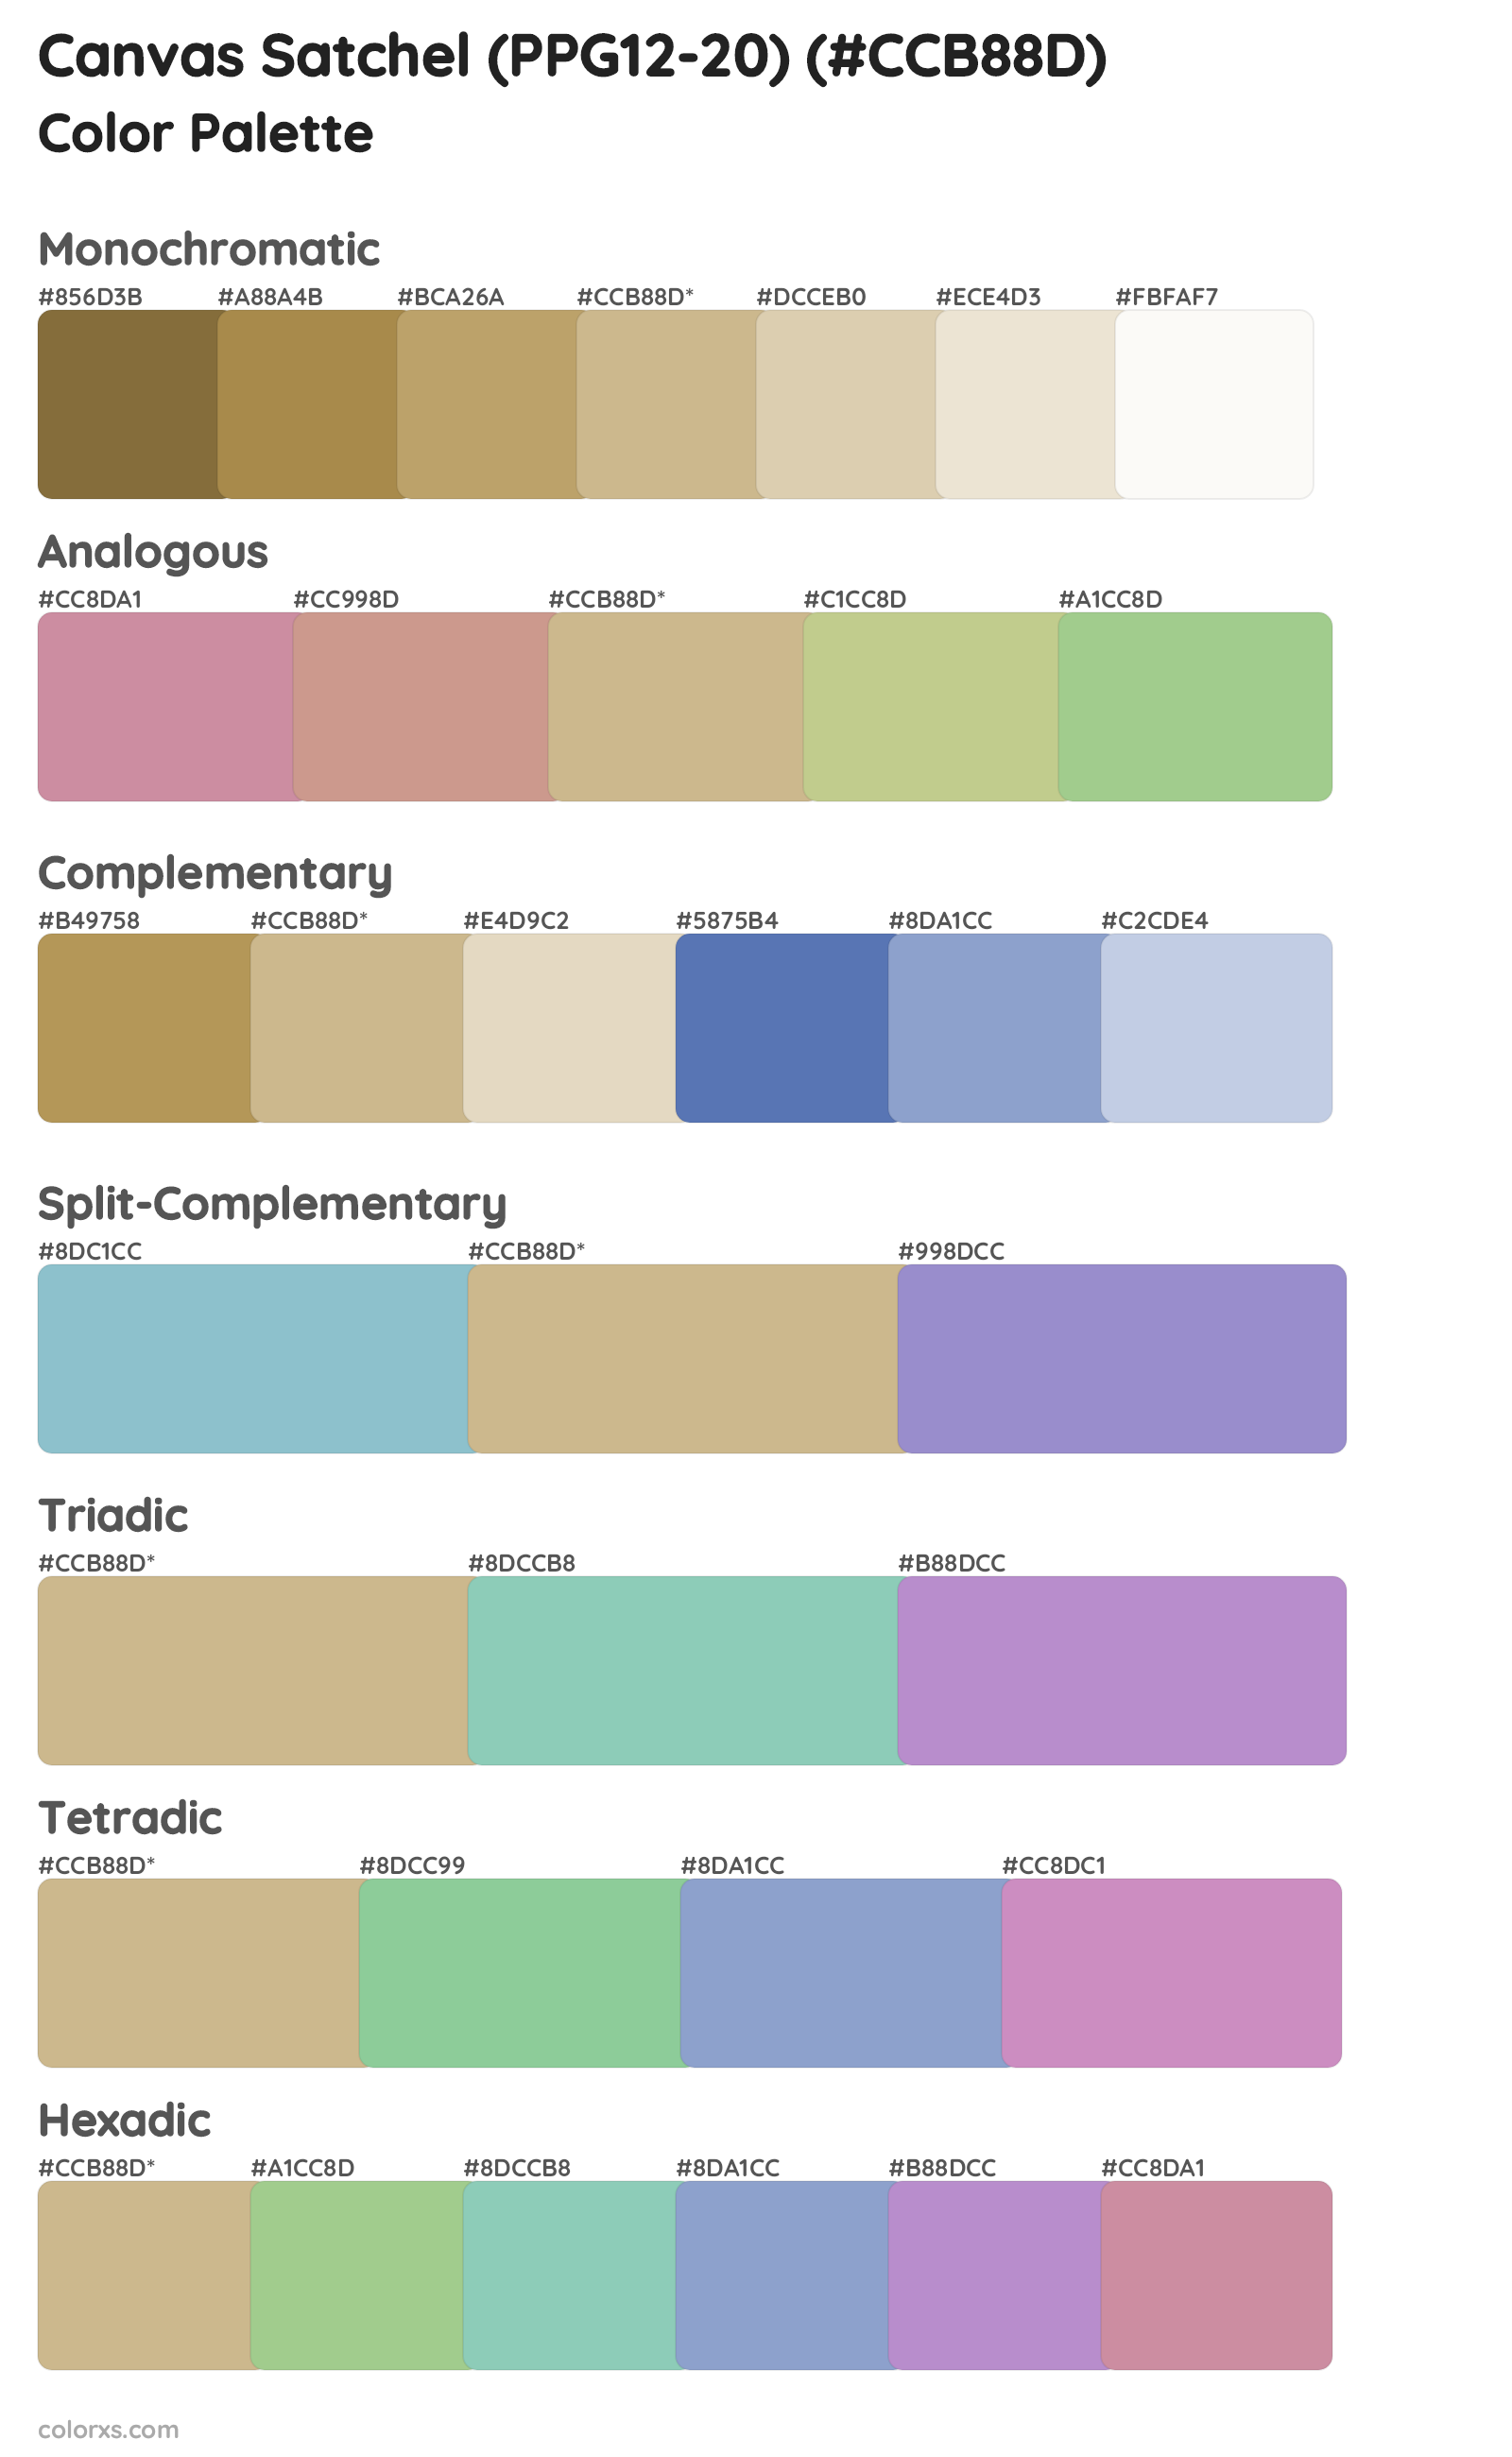 Canvas Satchel (PPG12-20) Color Scheme Palettes